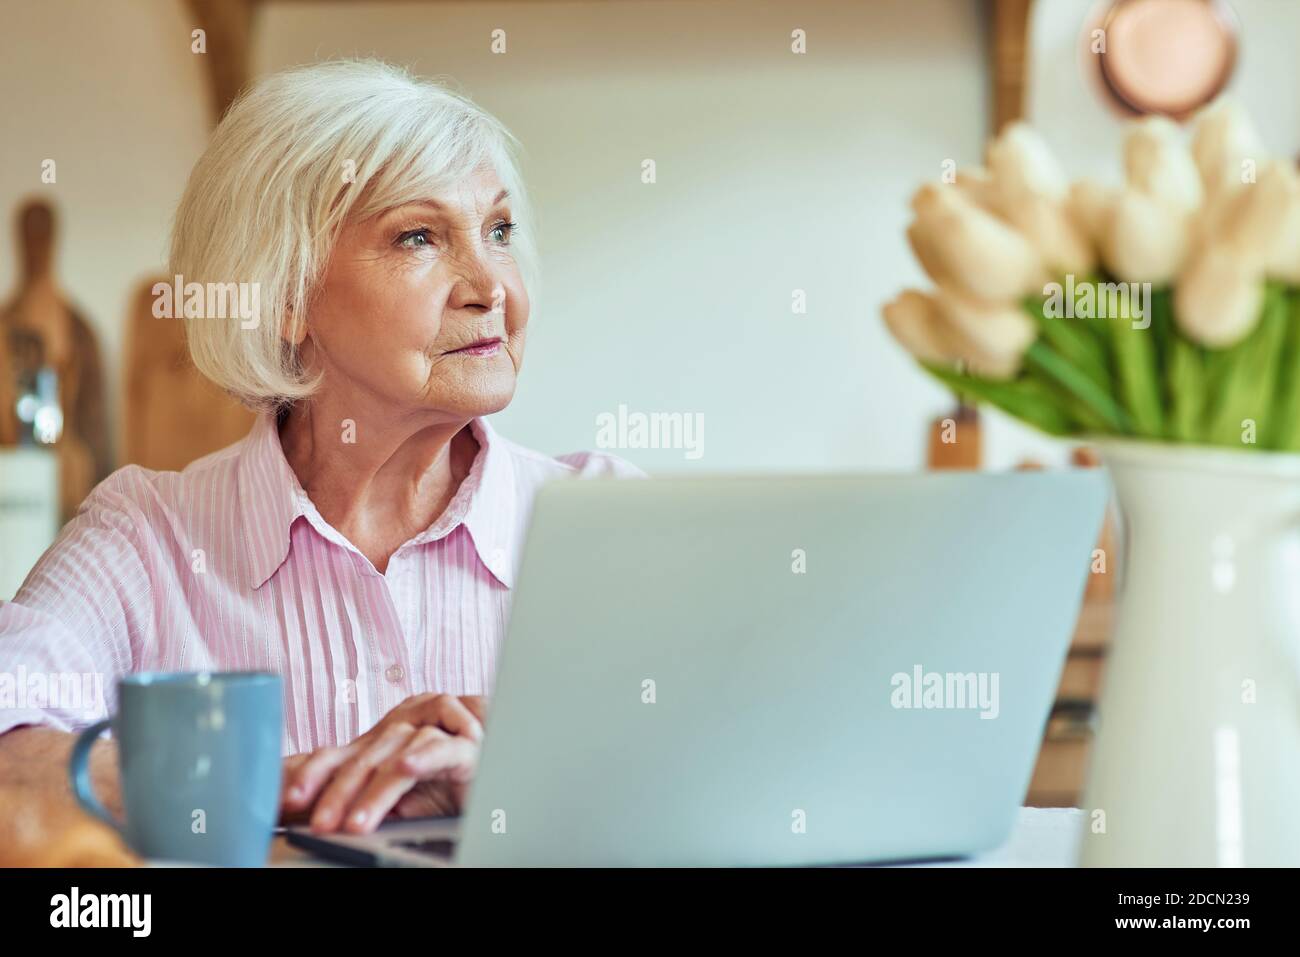 Le matin, la taille d'une femme âgée souriante s'asseyant à la table avec un ordinateur portable tout en regardant loin. Concept de style de vie domestique Banque D'Images